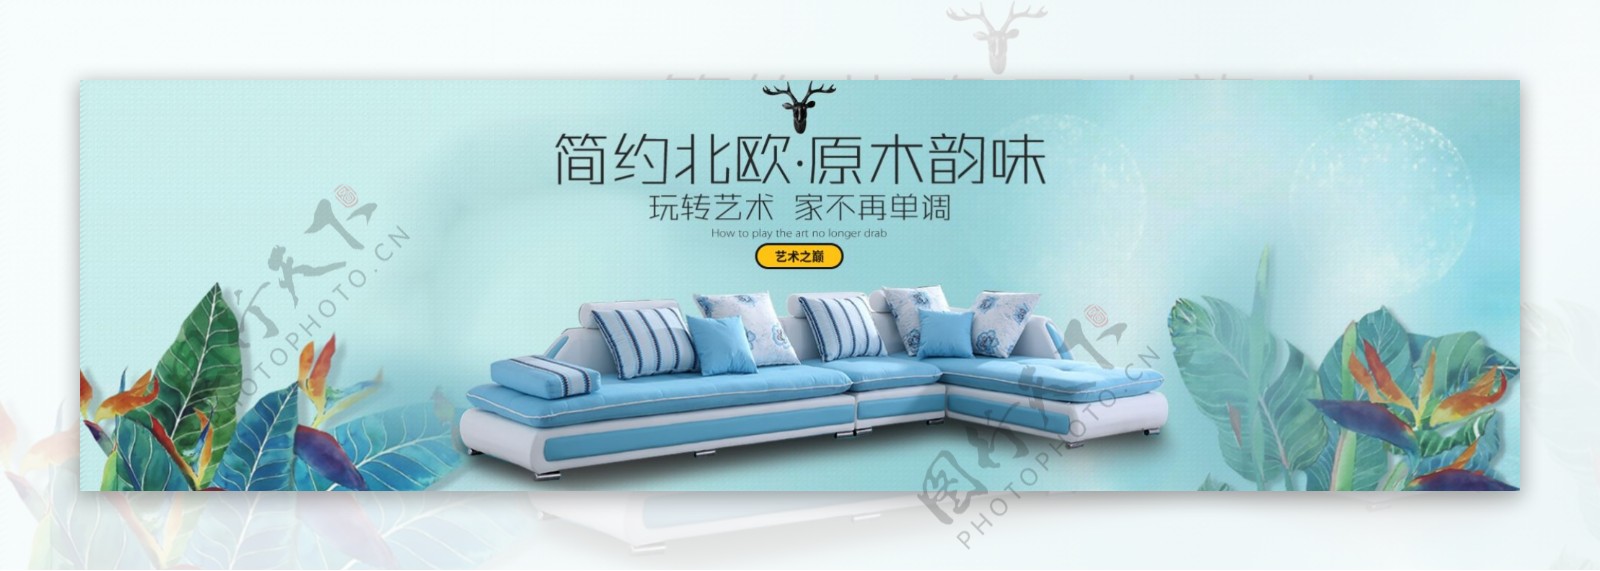 天猫淘宝日用家具多人沙发抱枕深蓝条纹海报